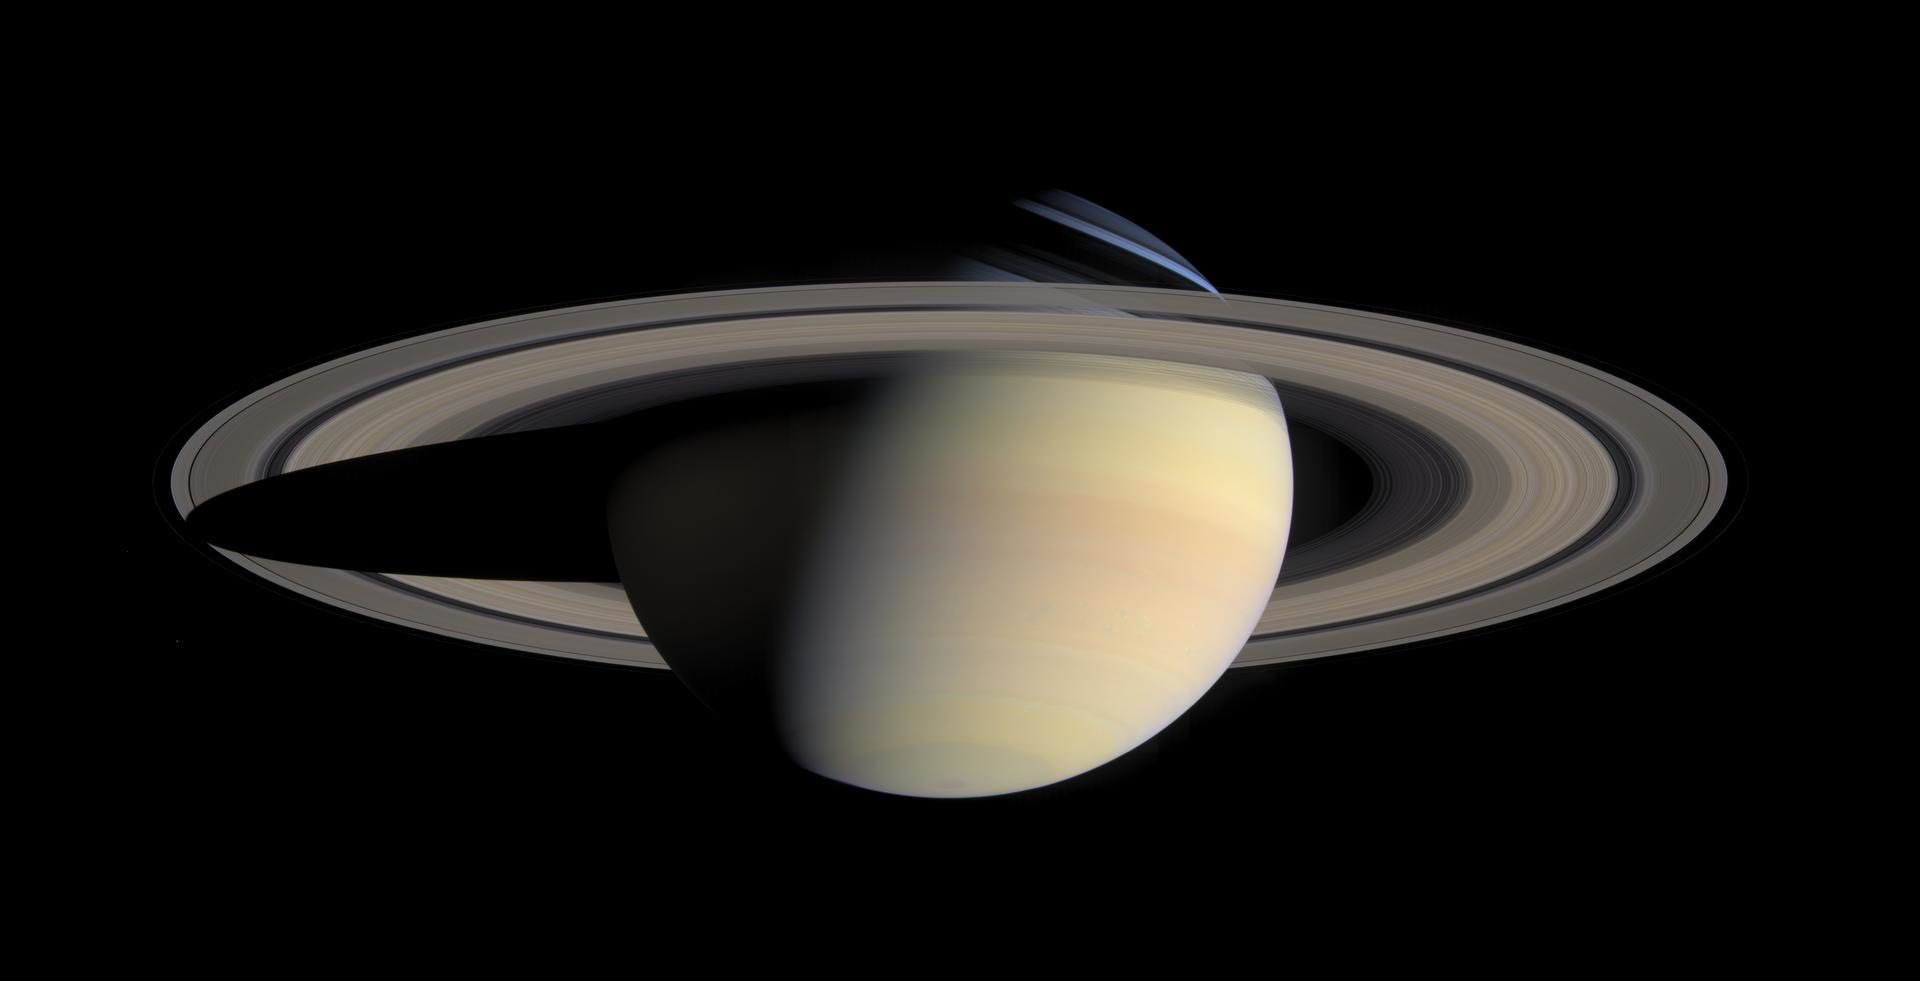 探査機カッシーニが撮影した土星